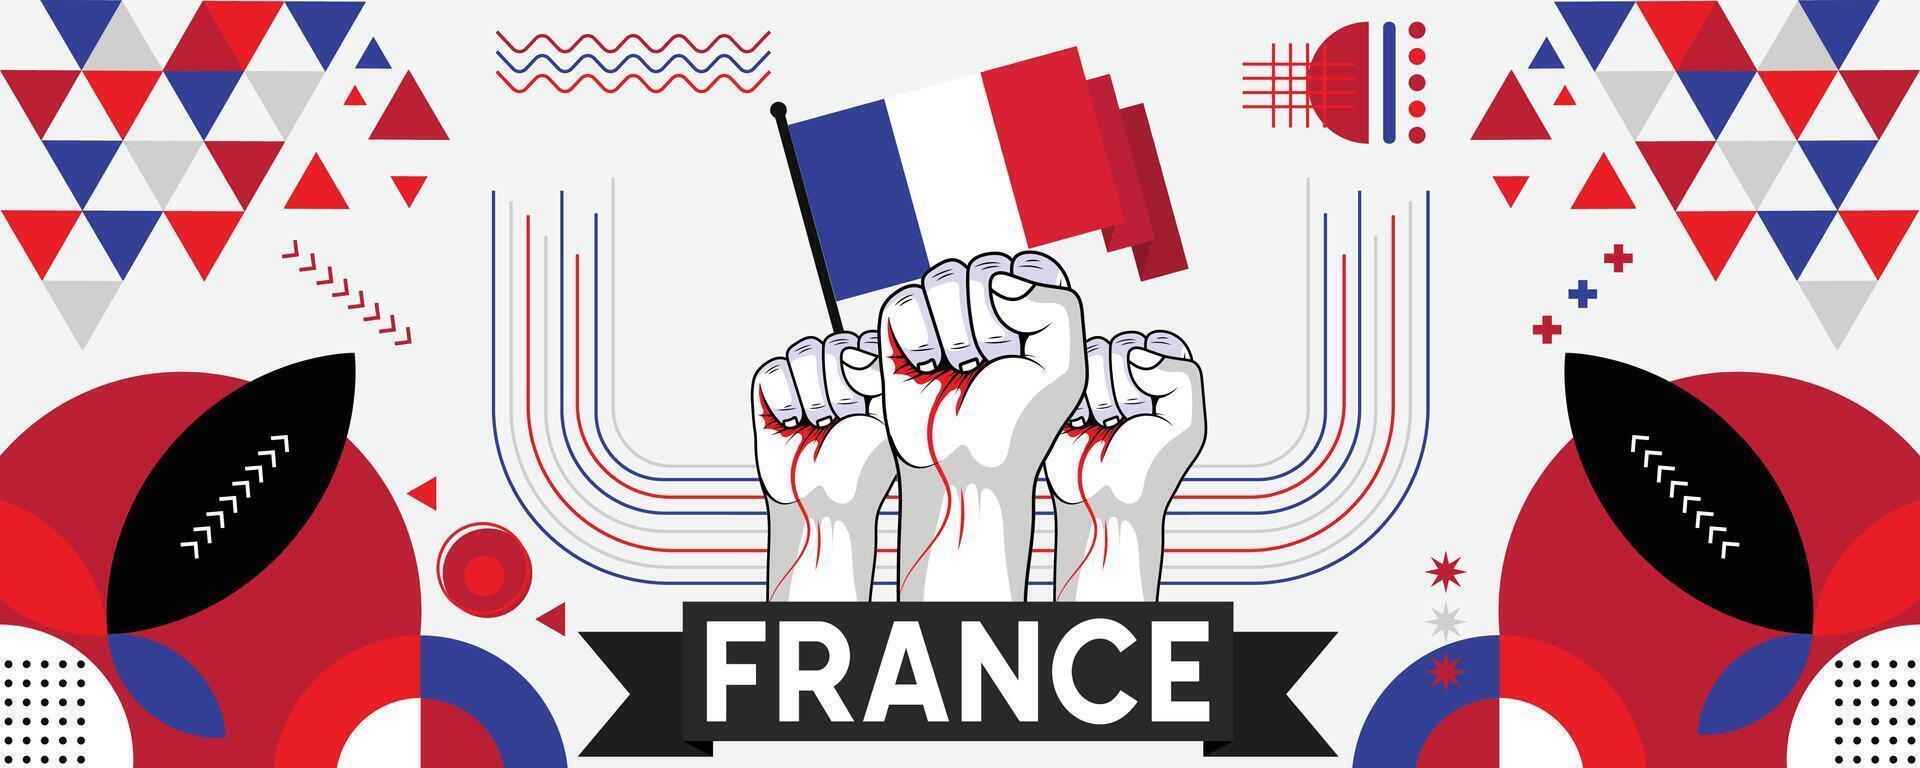 Francia nacional o independencia día bandera para país celebracion. bandera de Francia con elevado puños moderno retro diseño con tiporgafia resumen geométrico iconos vector ilustración.